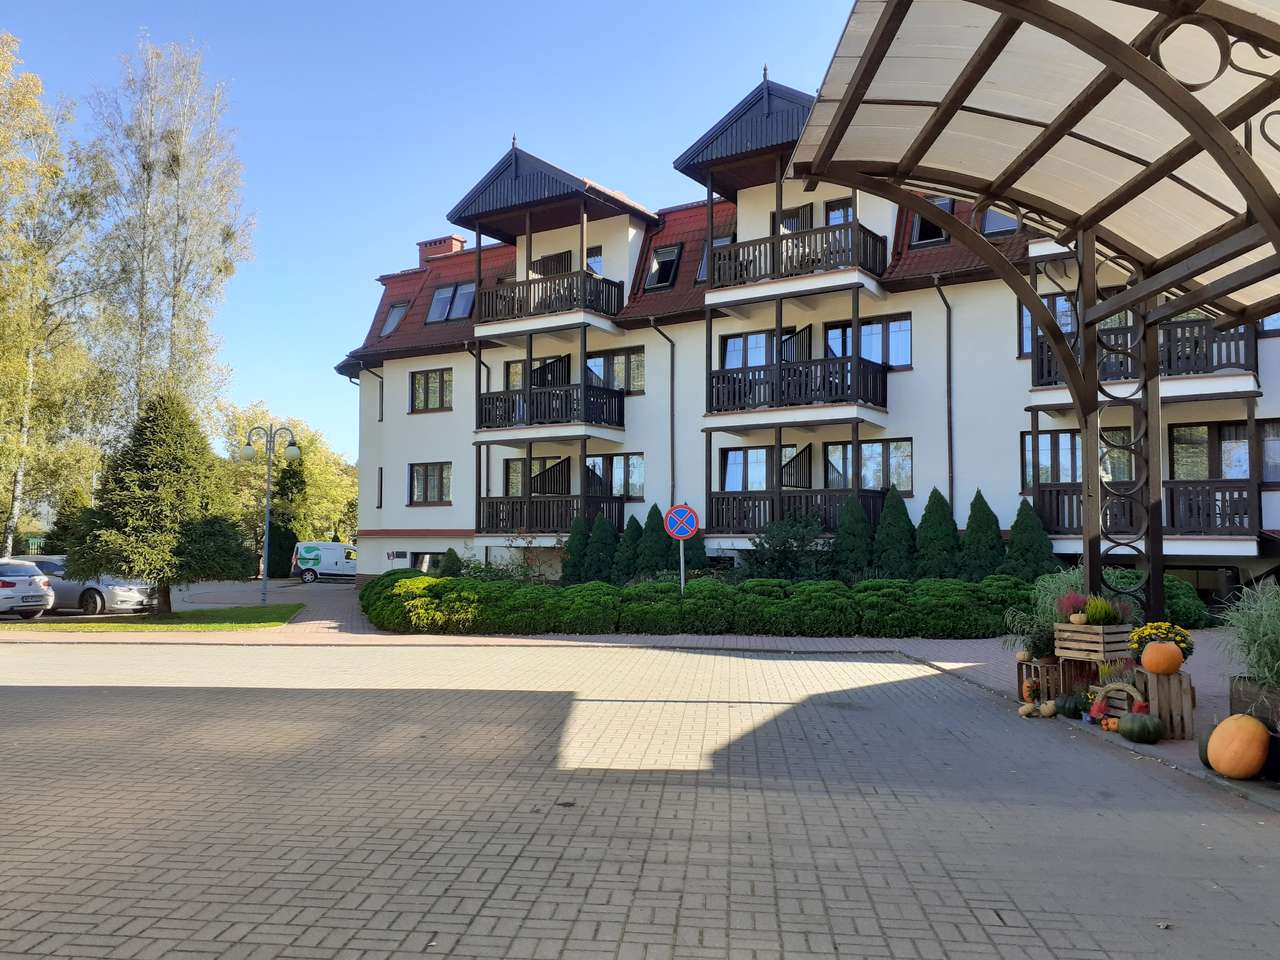 Ξενοδοχείο στο Stare Jabłonki online παζλ